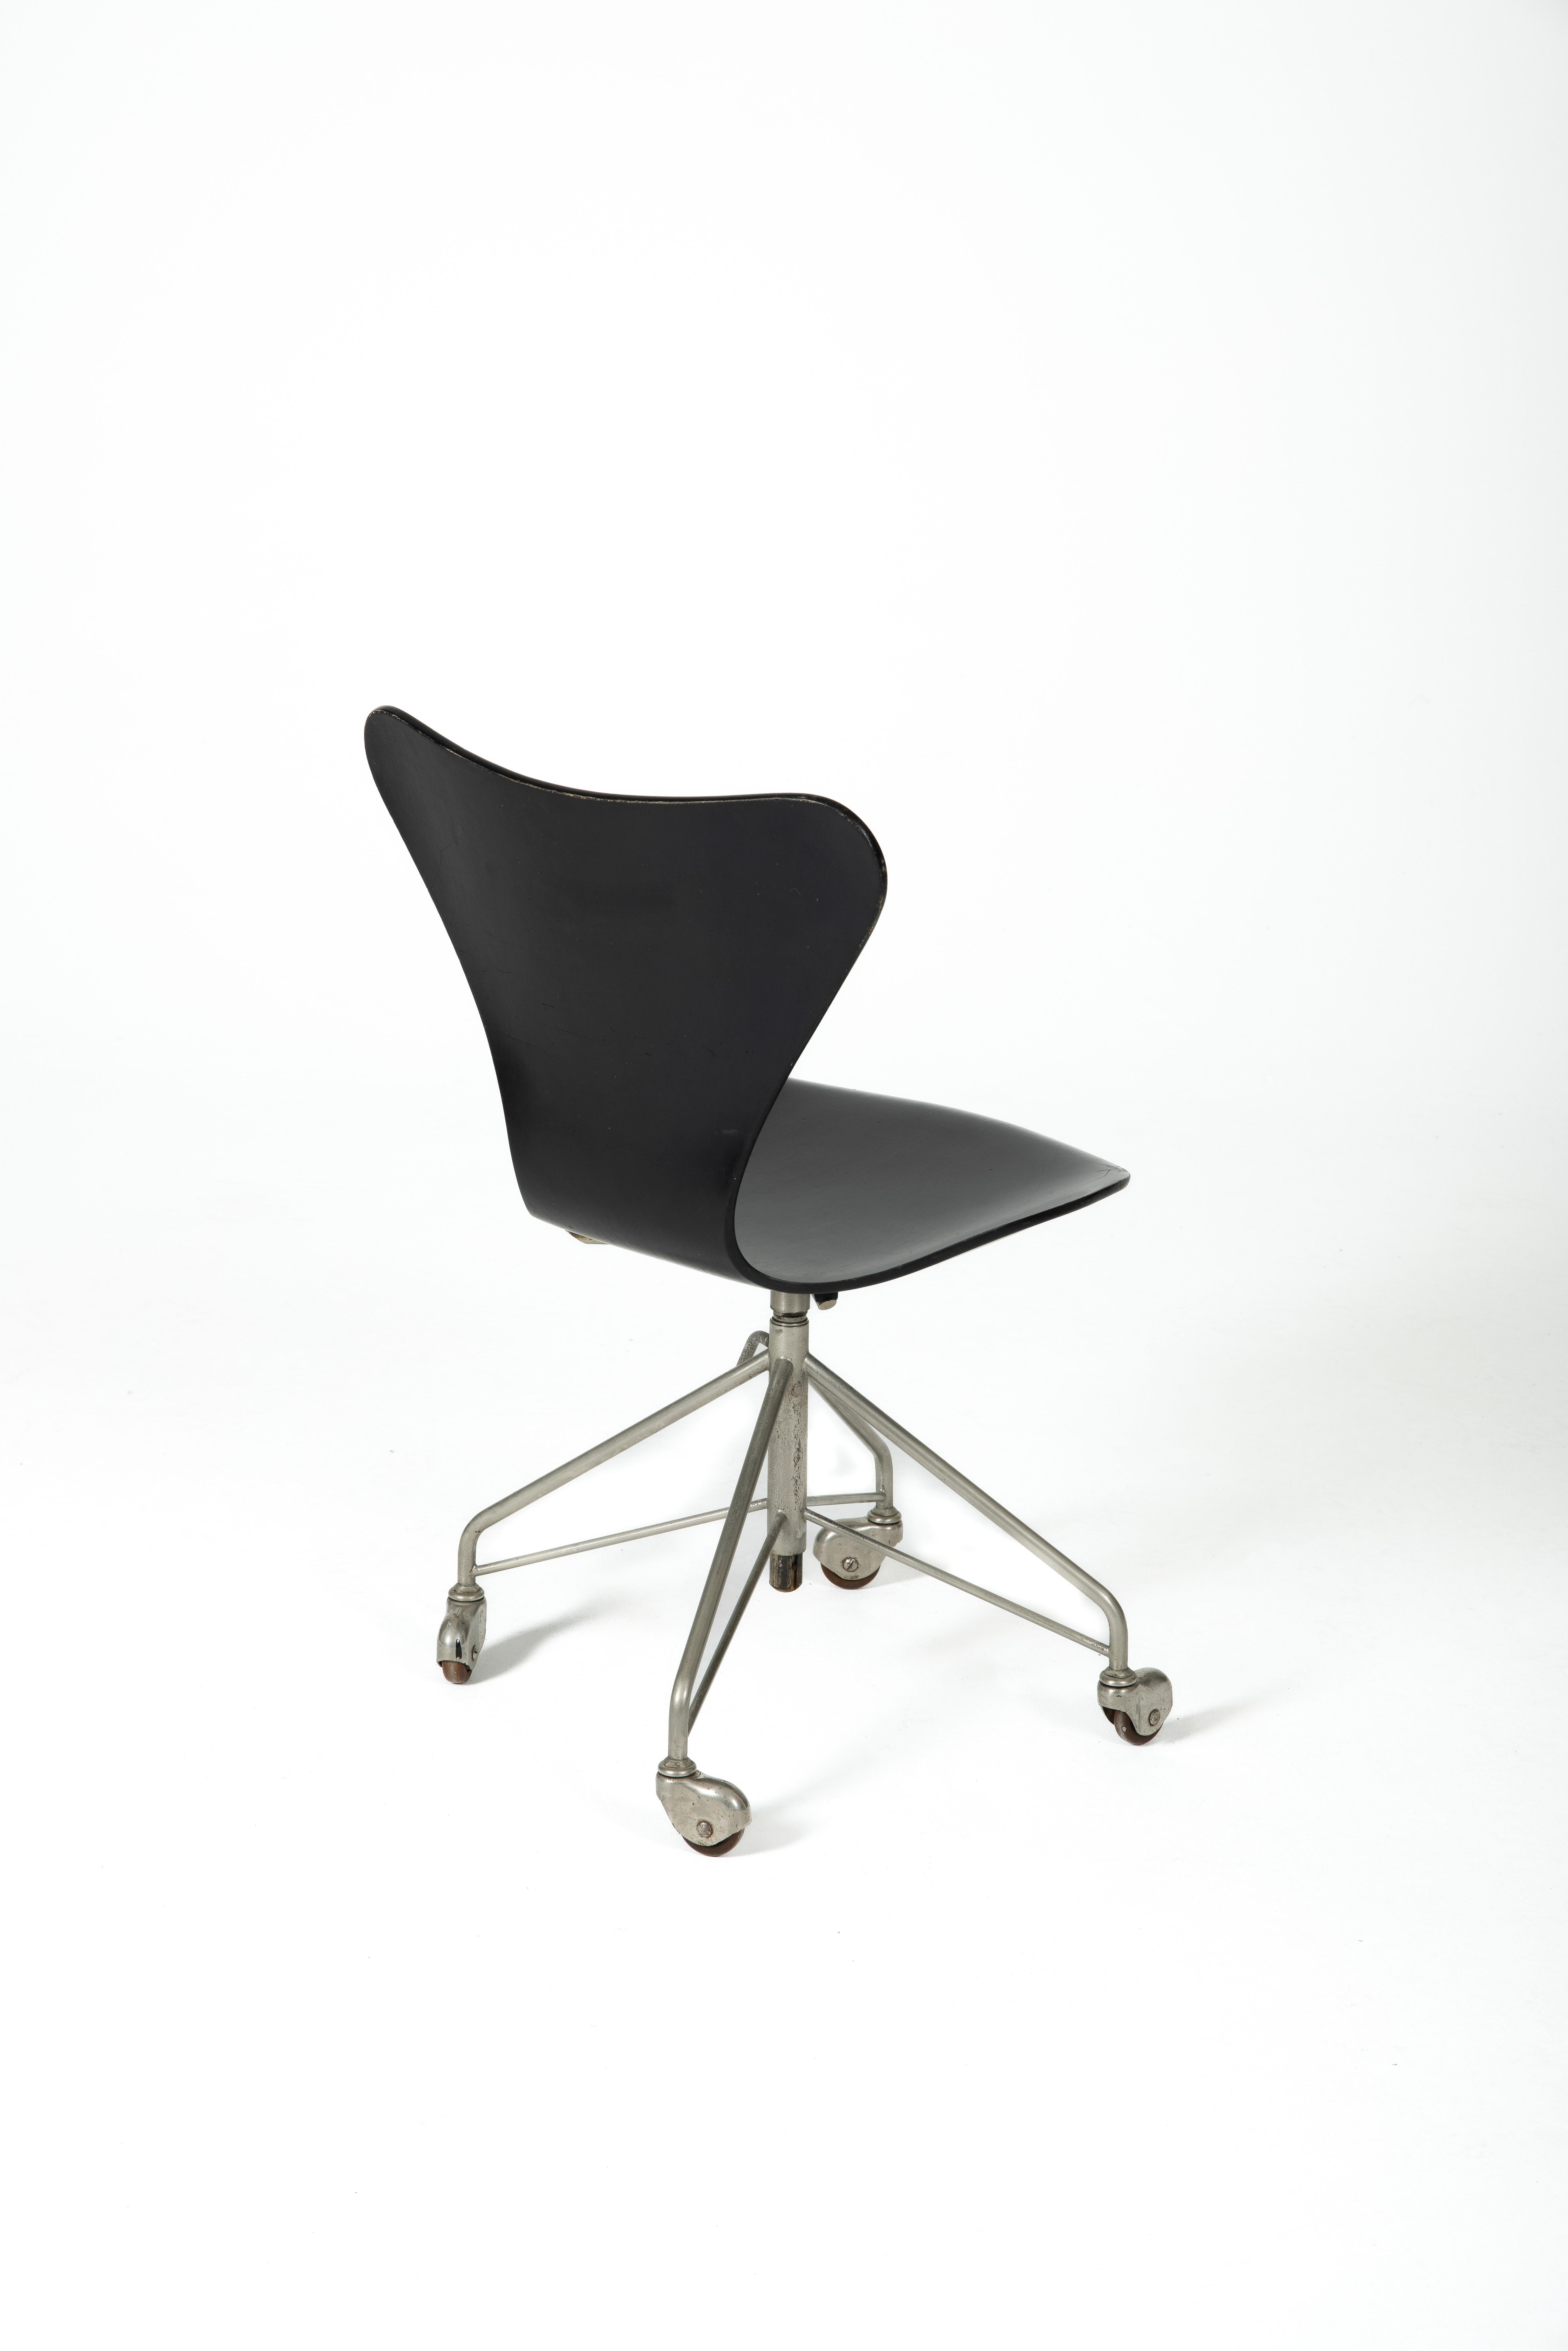 Mid-Century Modern Office Chair 3117 by Arne Jacobsen for Fritz Hansen, Denmark, 1960s